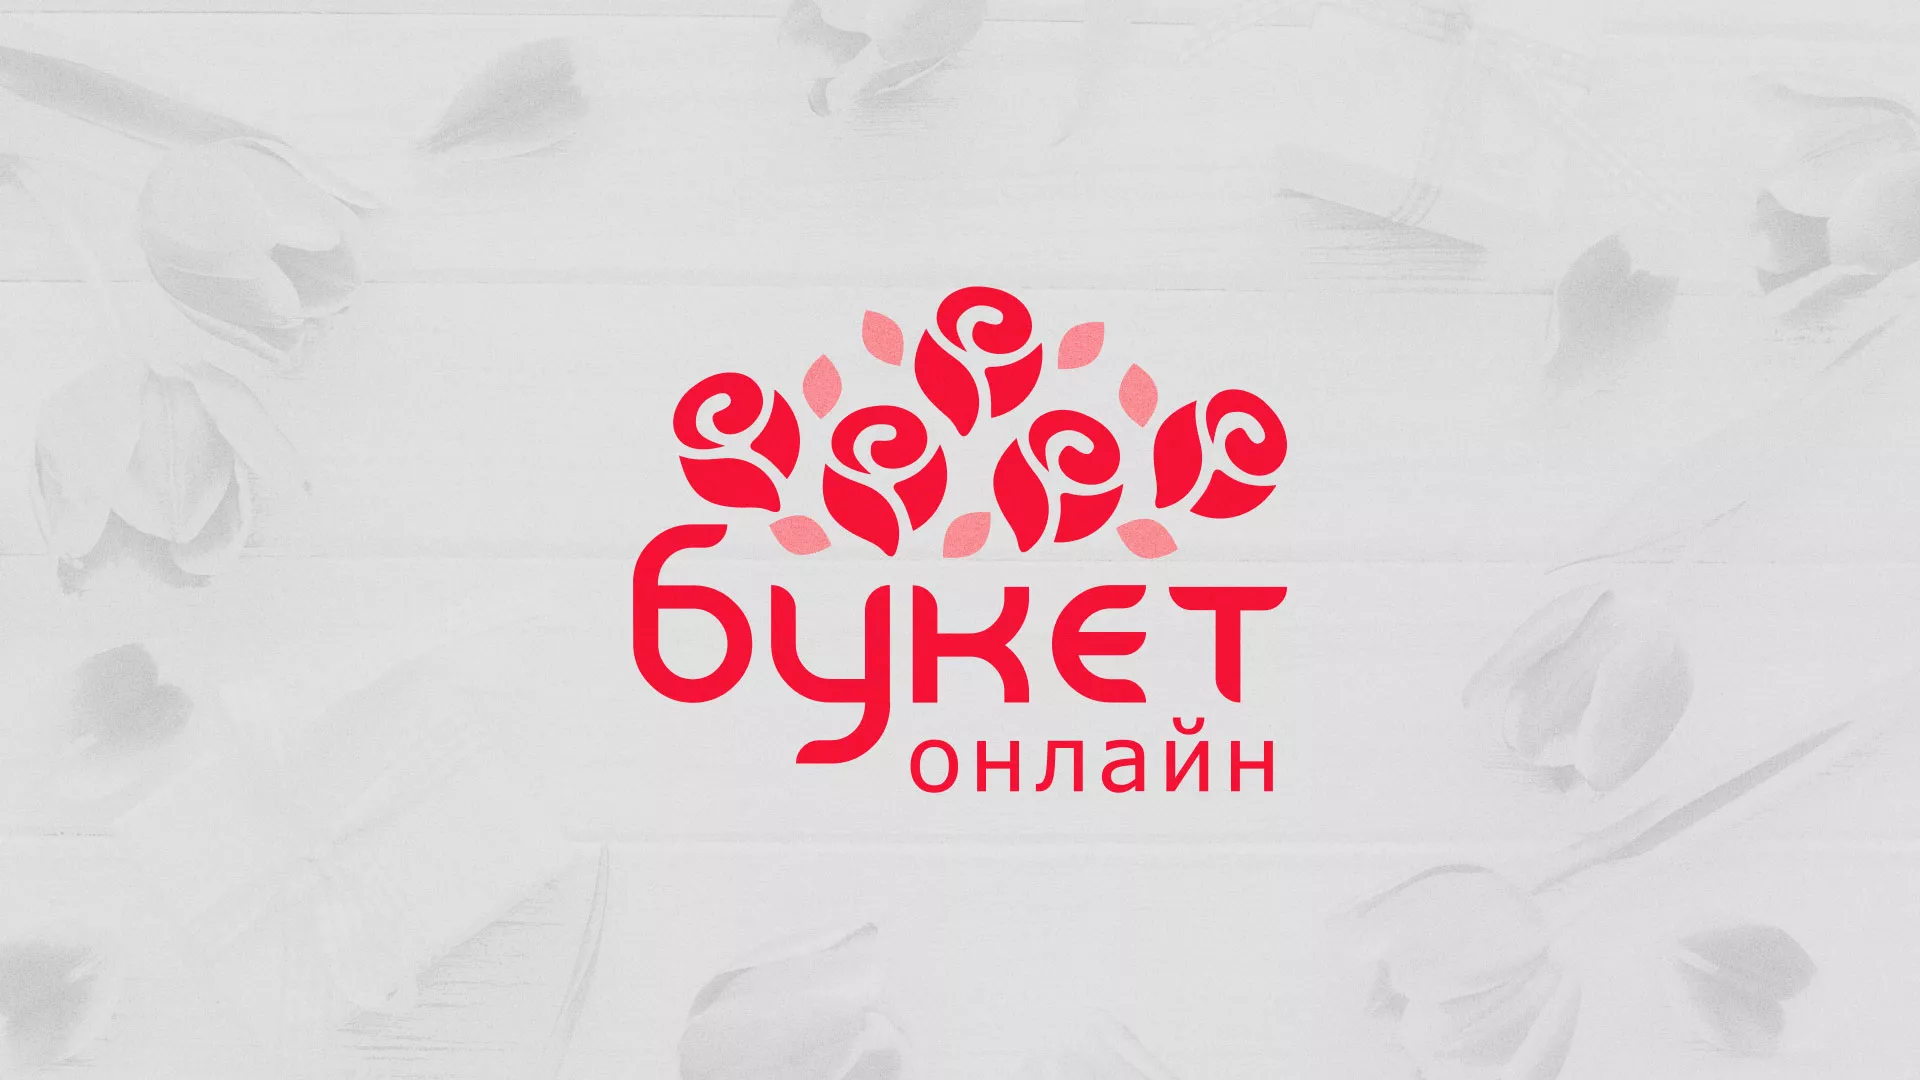 Создание интернет-магазина «Букет-онлайн» по цветам в Кедровом